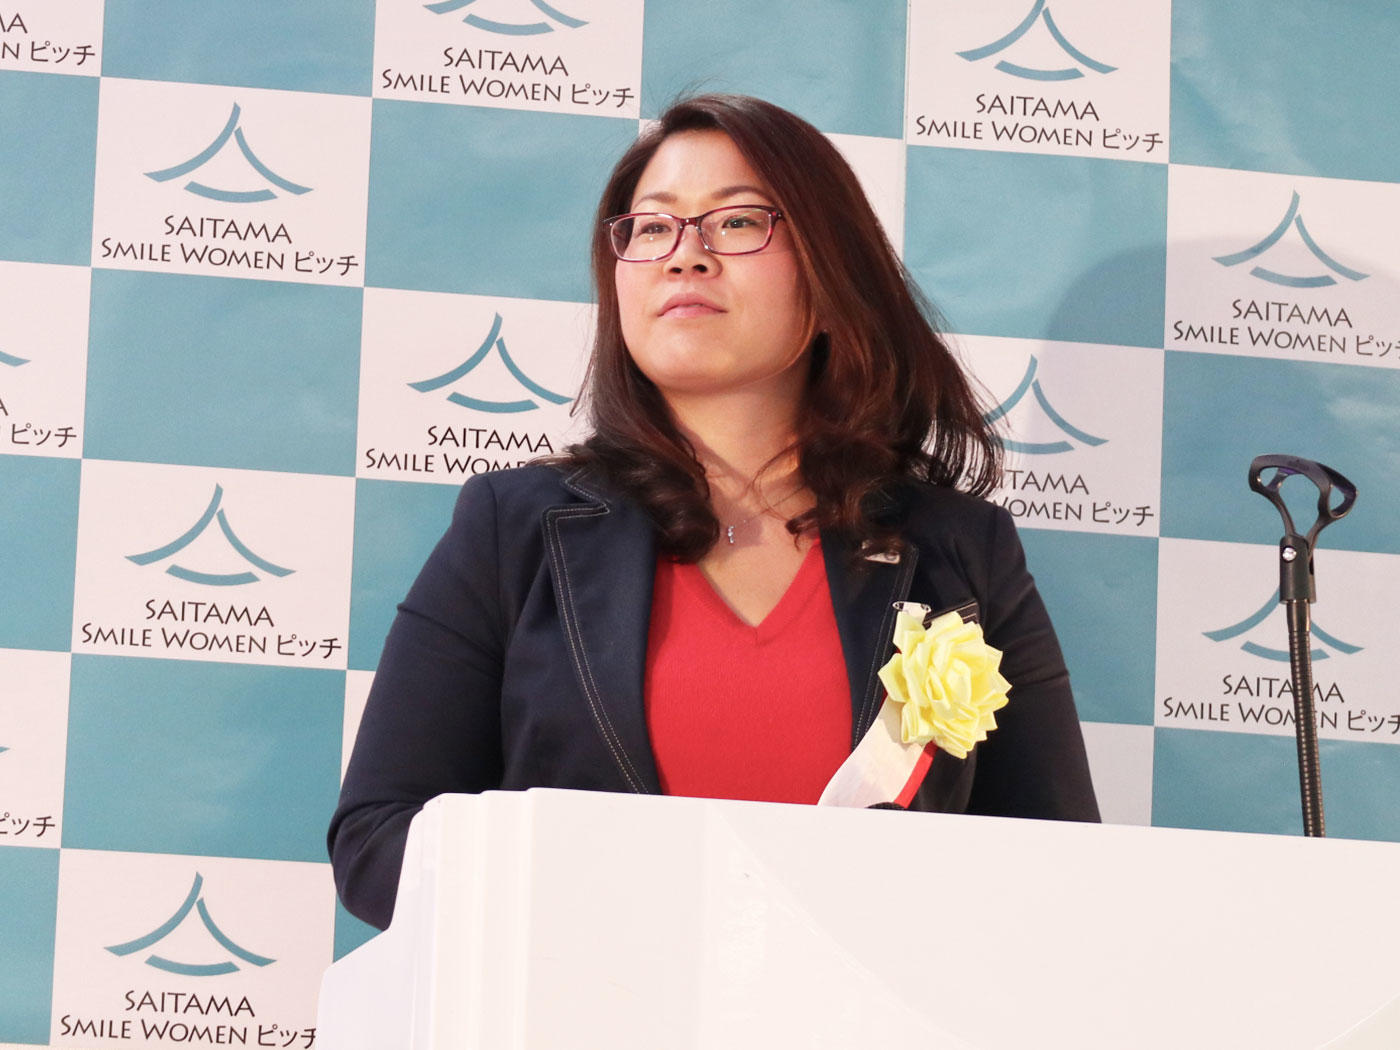 公認スポーツ栄養士が女性起業家コンテストで入賞！「Saitama Smile Women ピッチ2019」